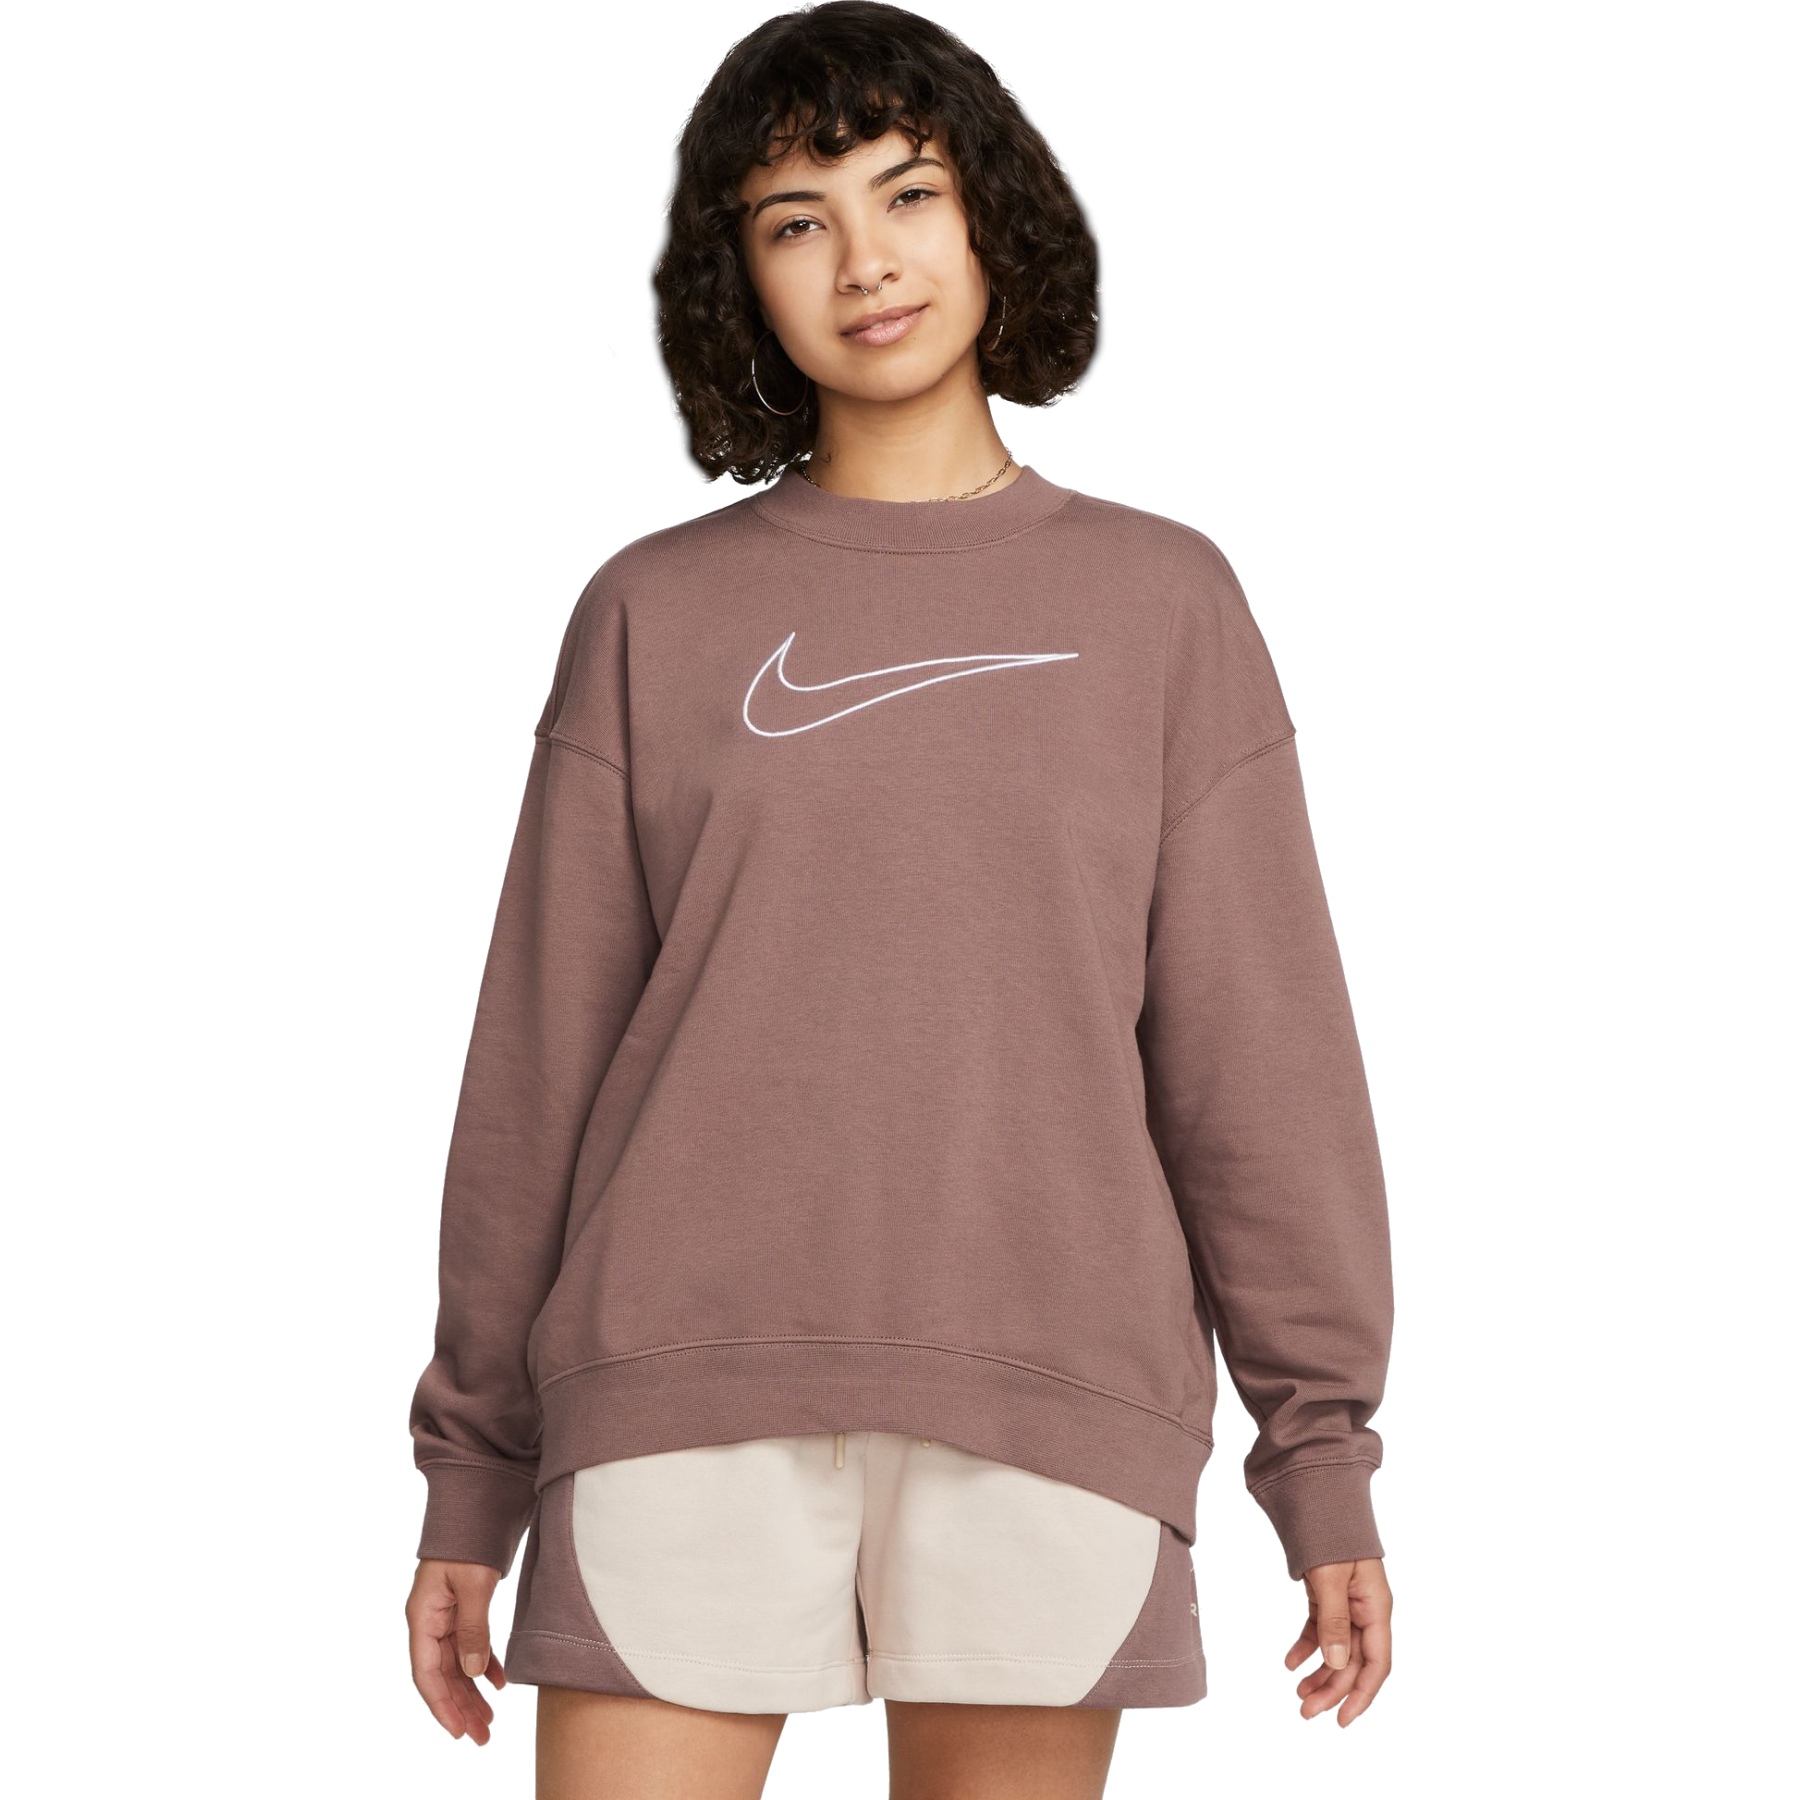 Produktbild von Nike Dri-FIT Get Fit Sweatshirt mit Grafik und Rundhalsausschnitt für Damen - plum eclipse/white DQ5542-291